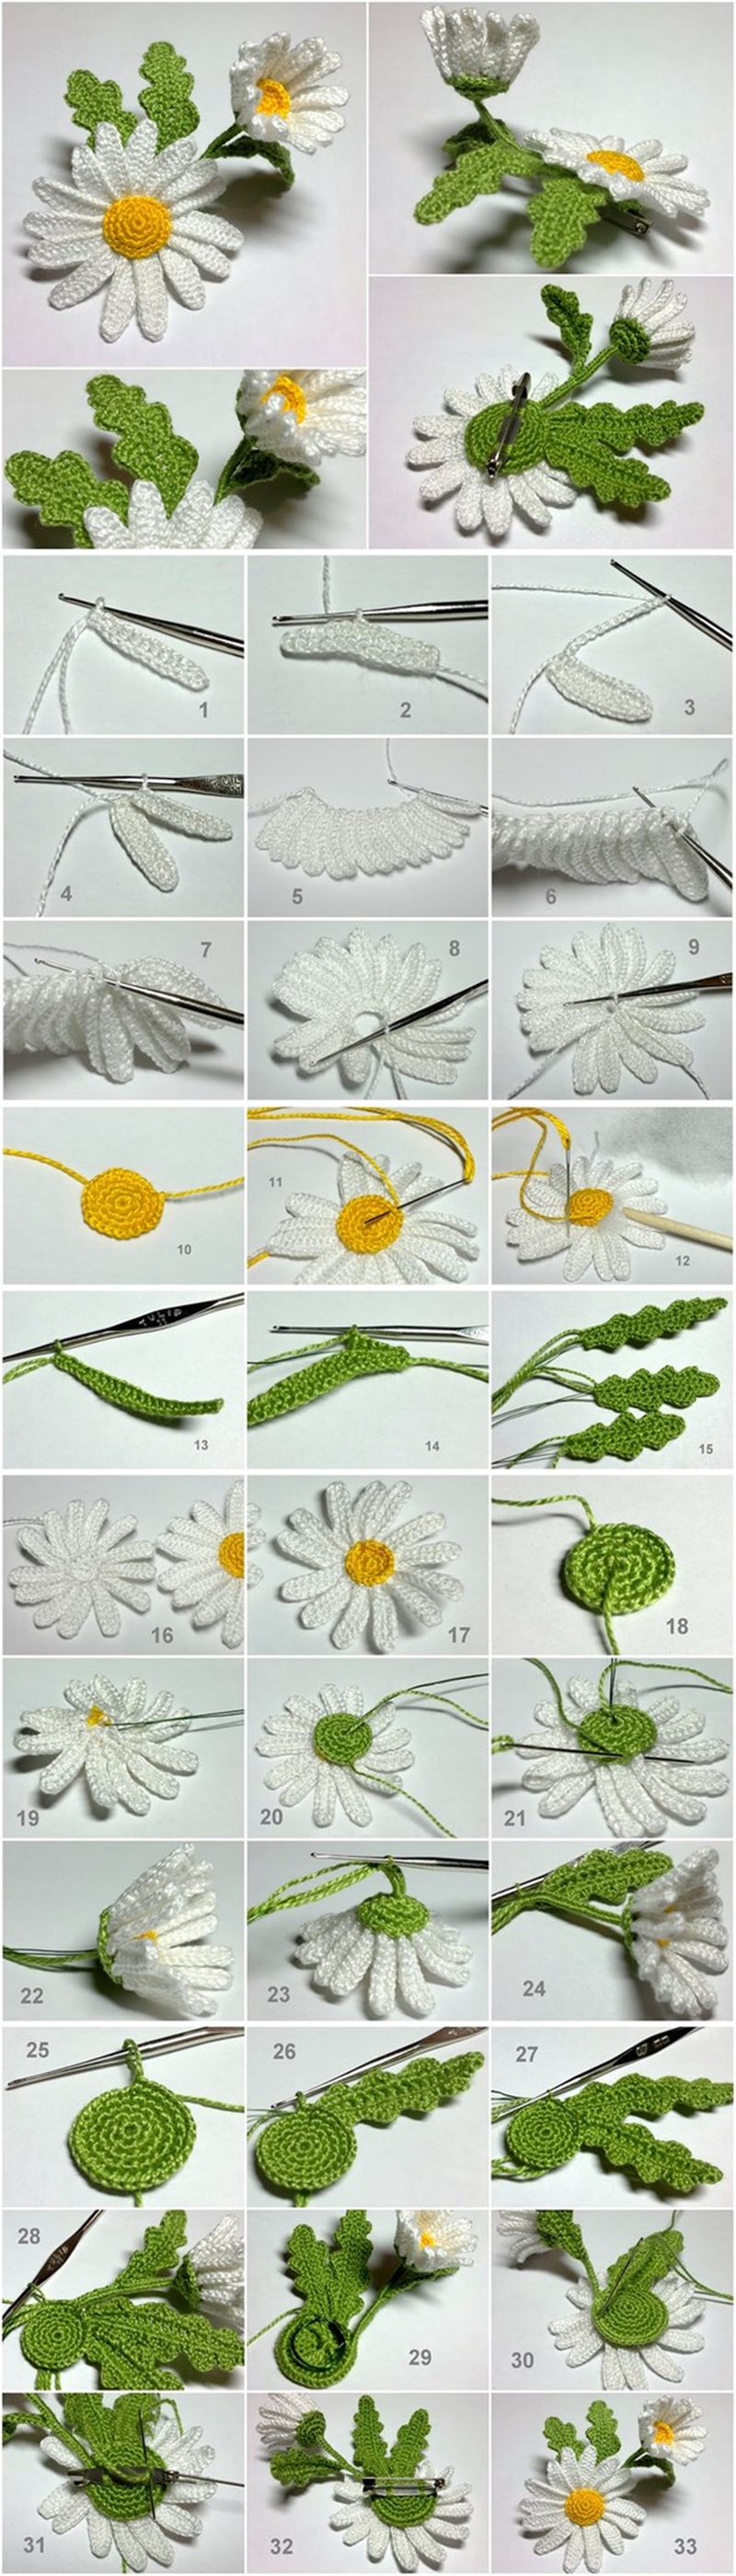 crochet 3D daisy tutorial